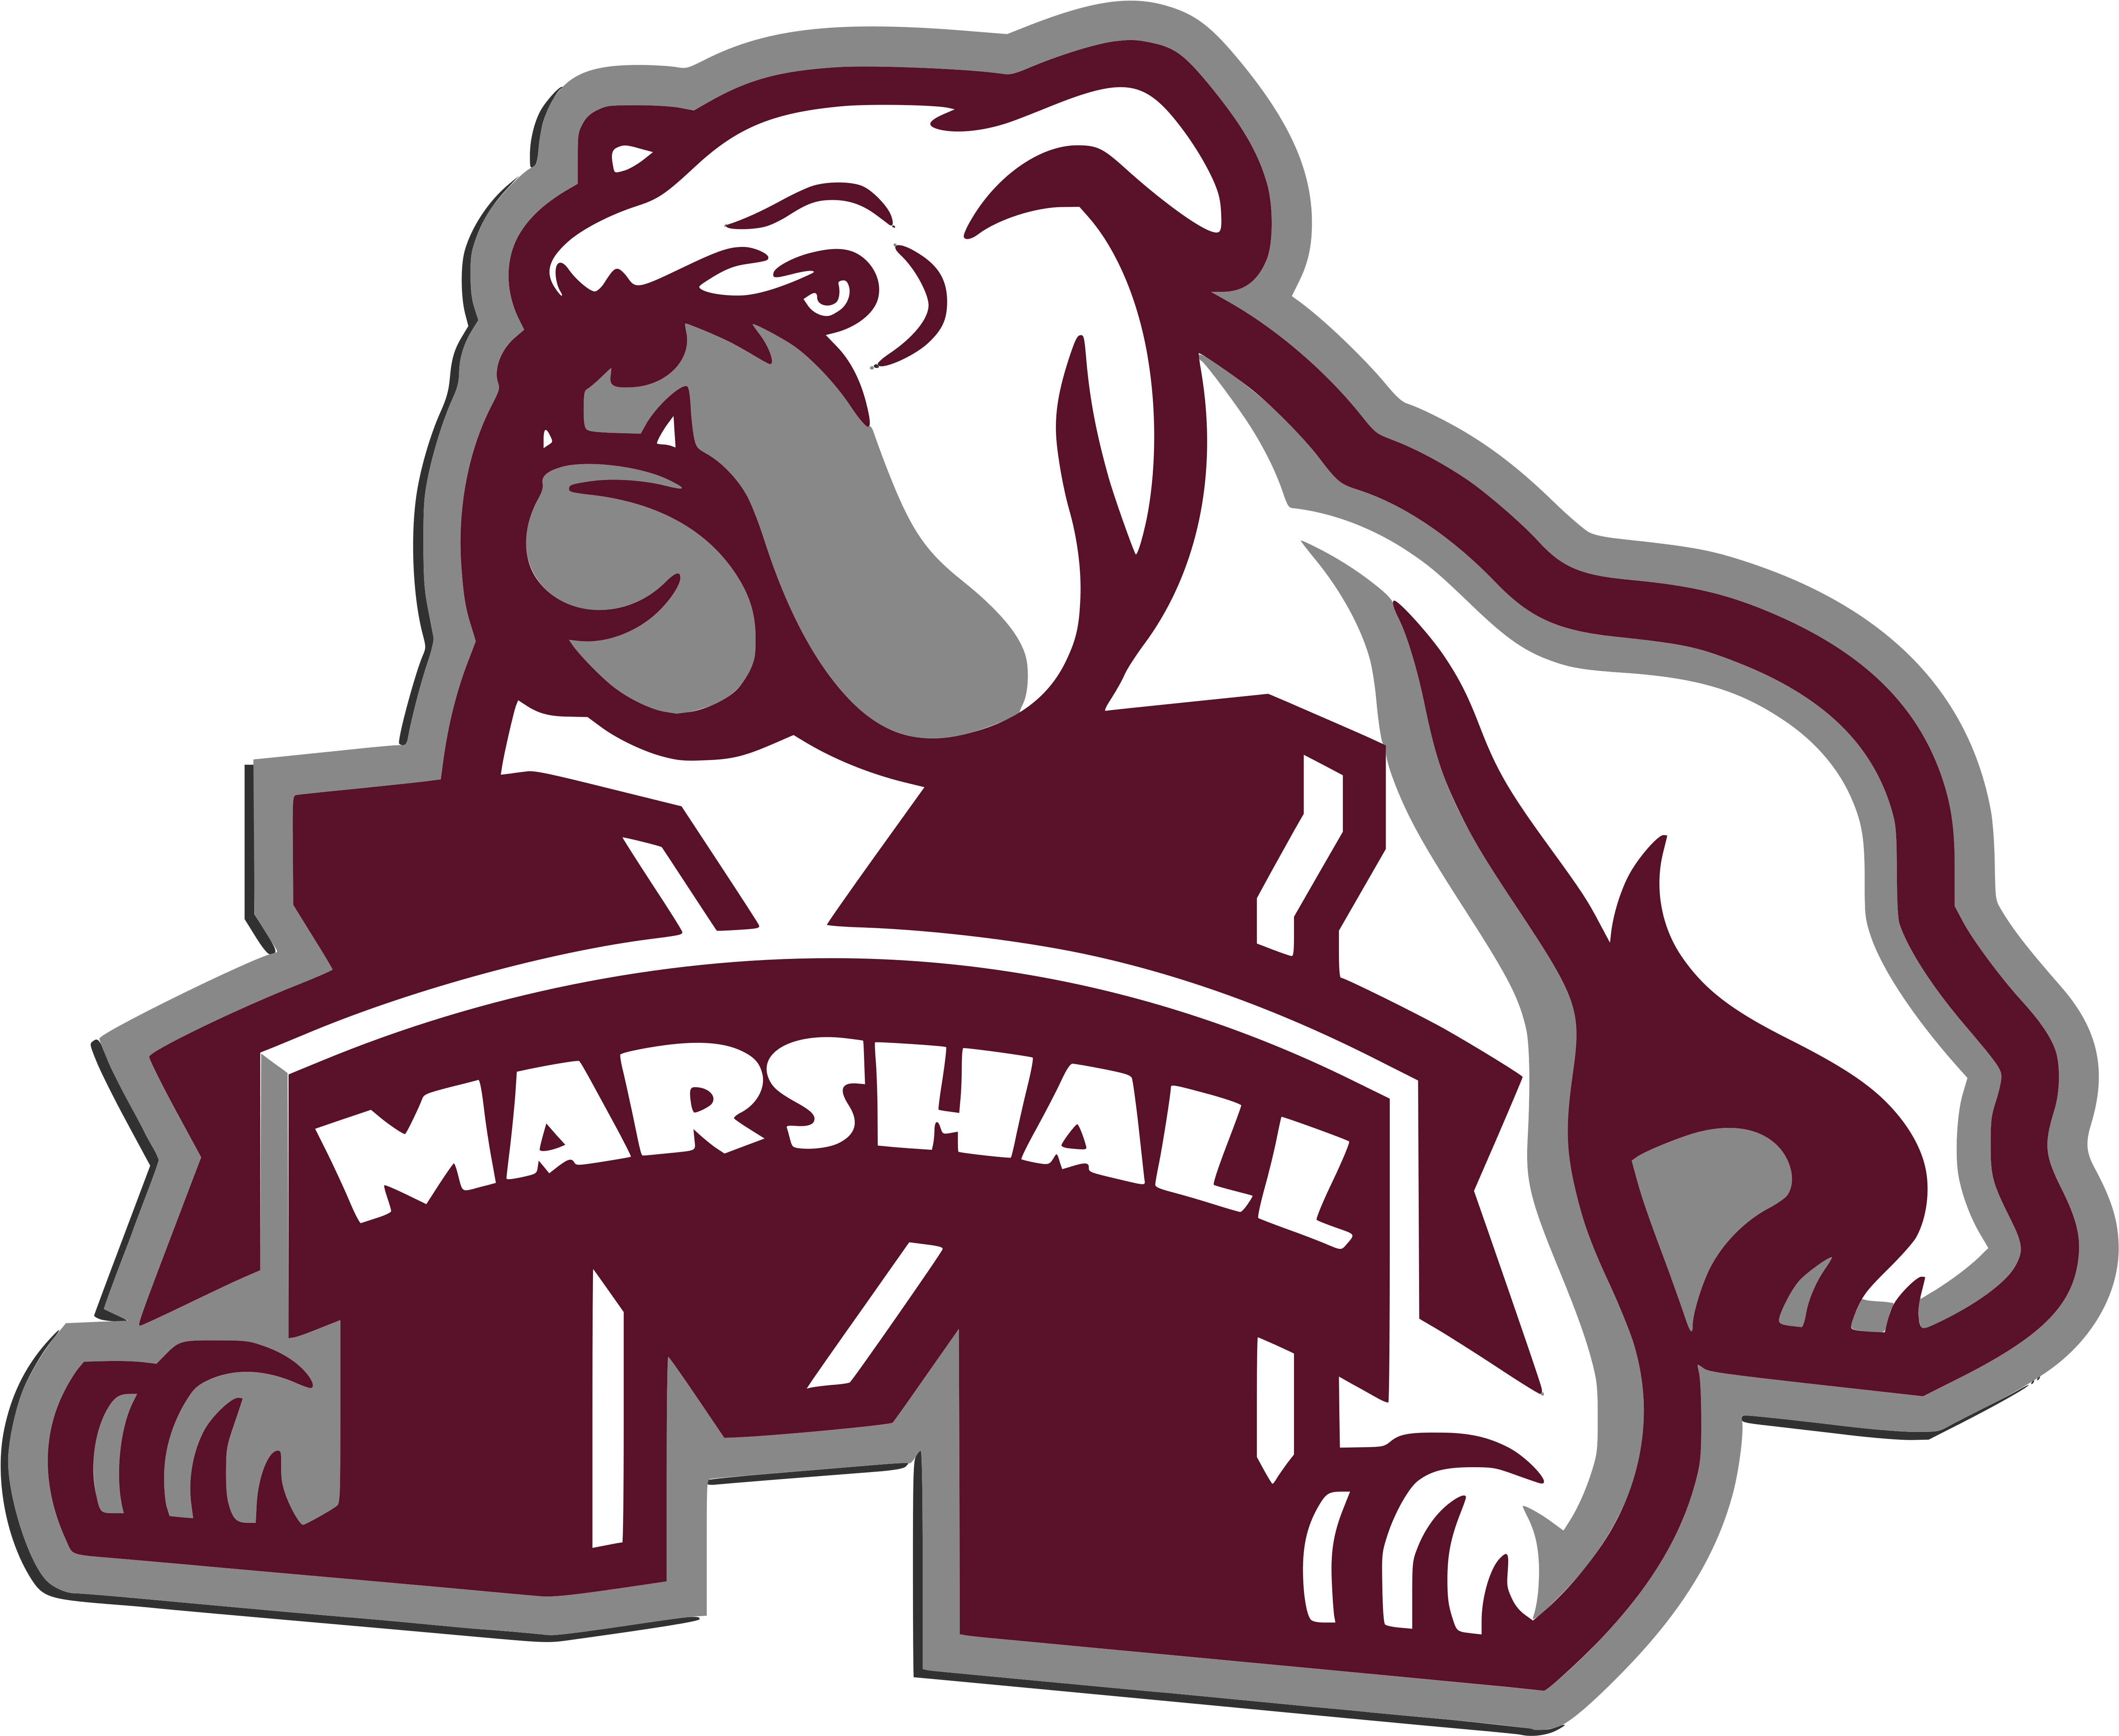 Marshall Elementary School - Mississippi State University Mascot (6000x4737)